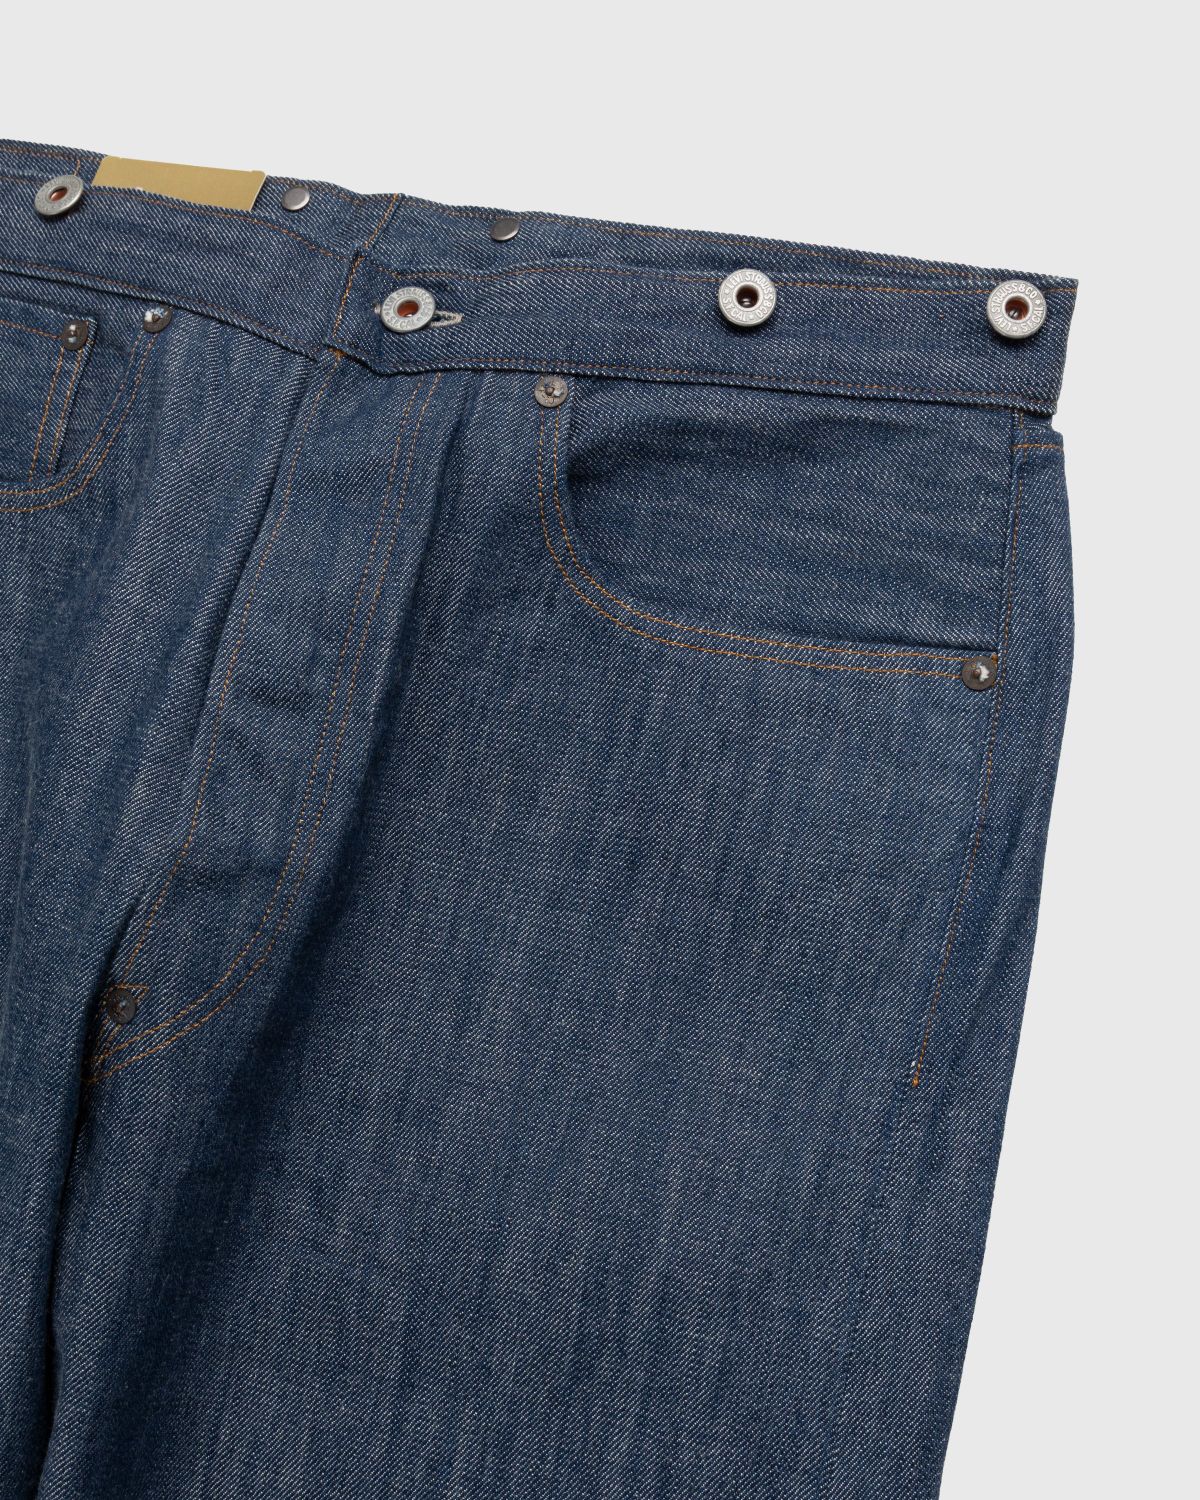 Levi's – 1890 501 Jeans Dark Indigo Flat Finish | Highsnobiety Shop